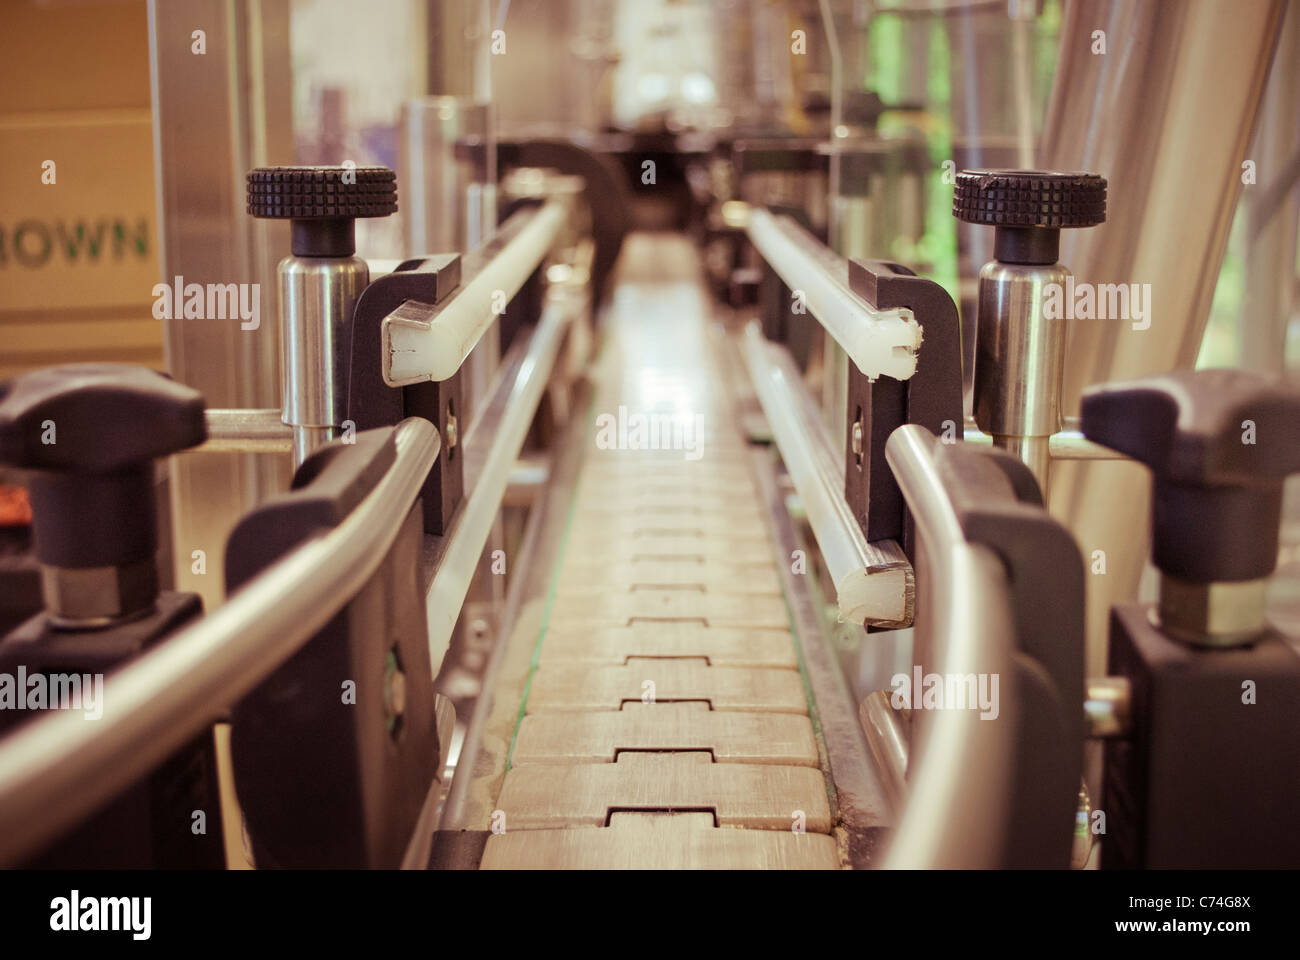 Beer brewery conveyor belt. Stock Photo